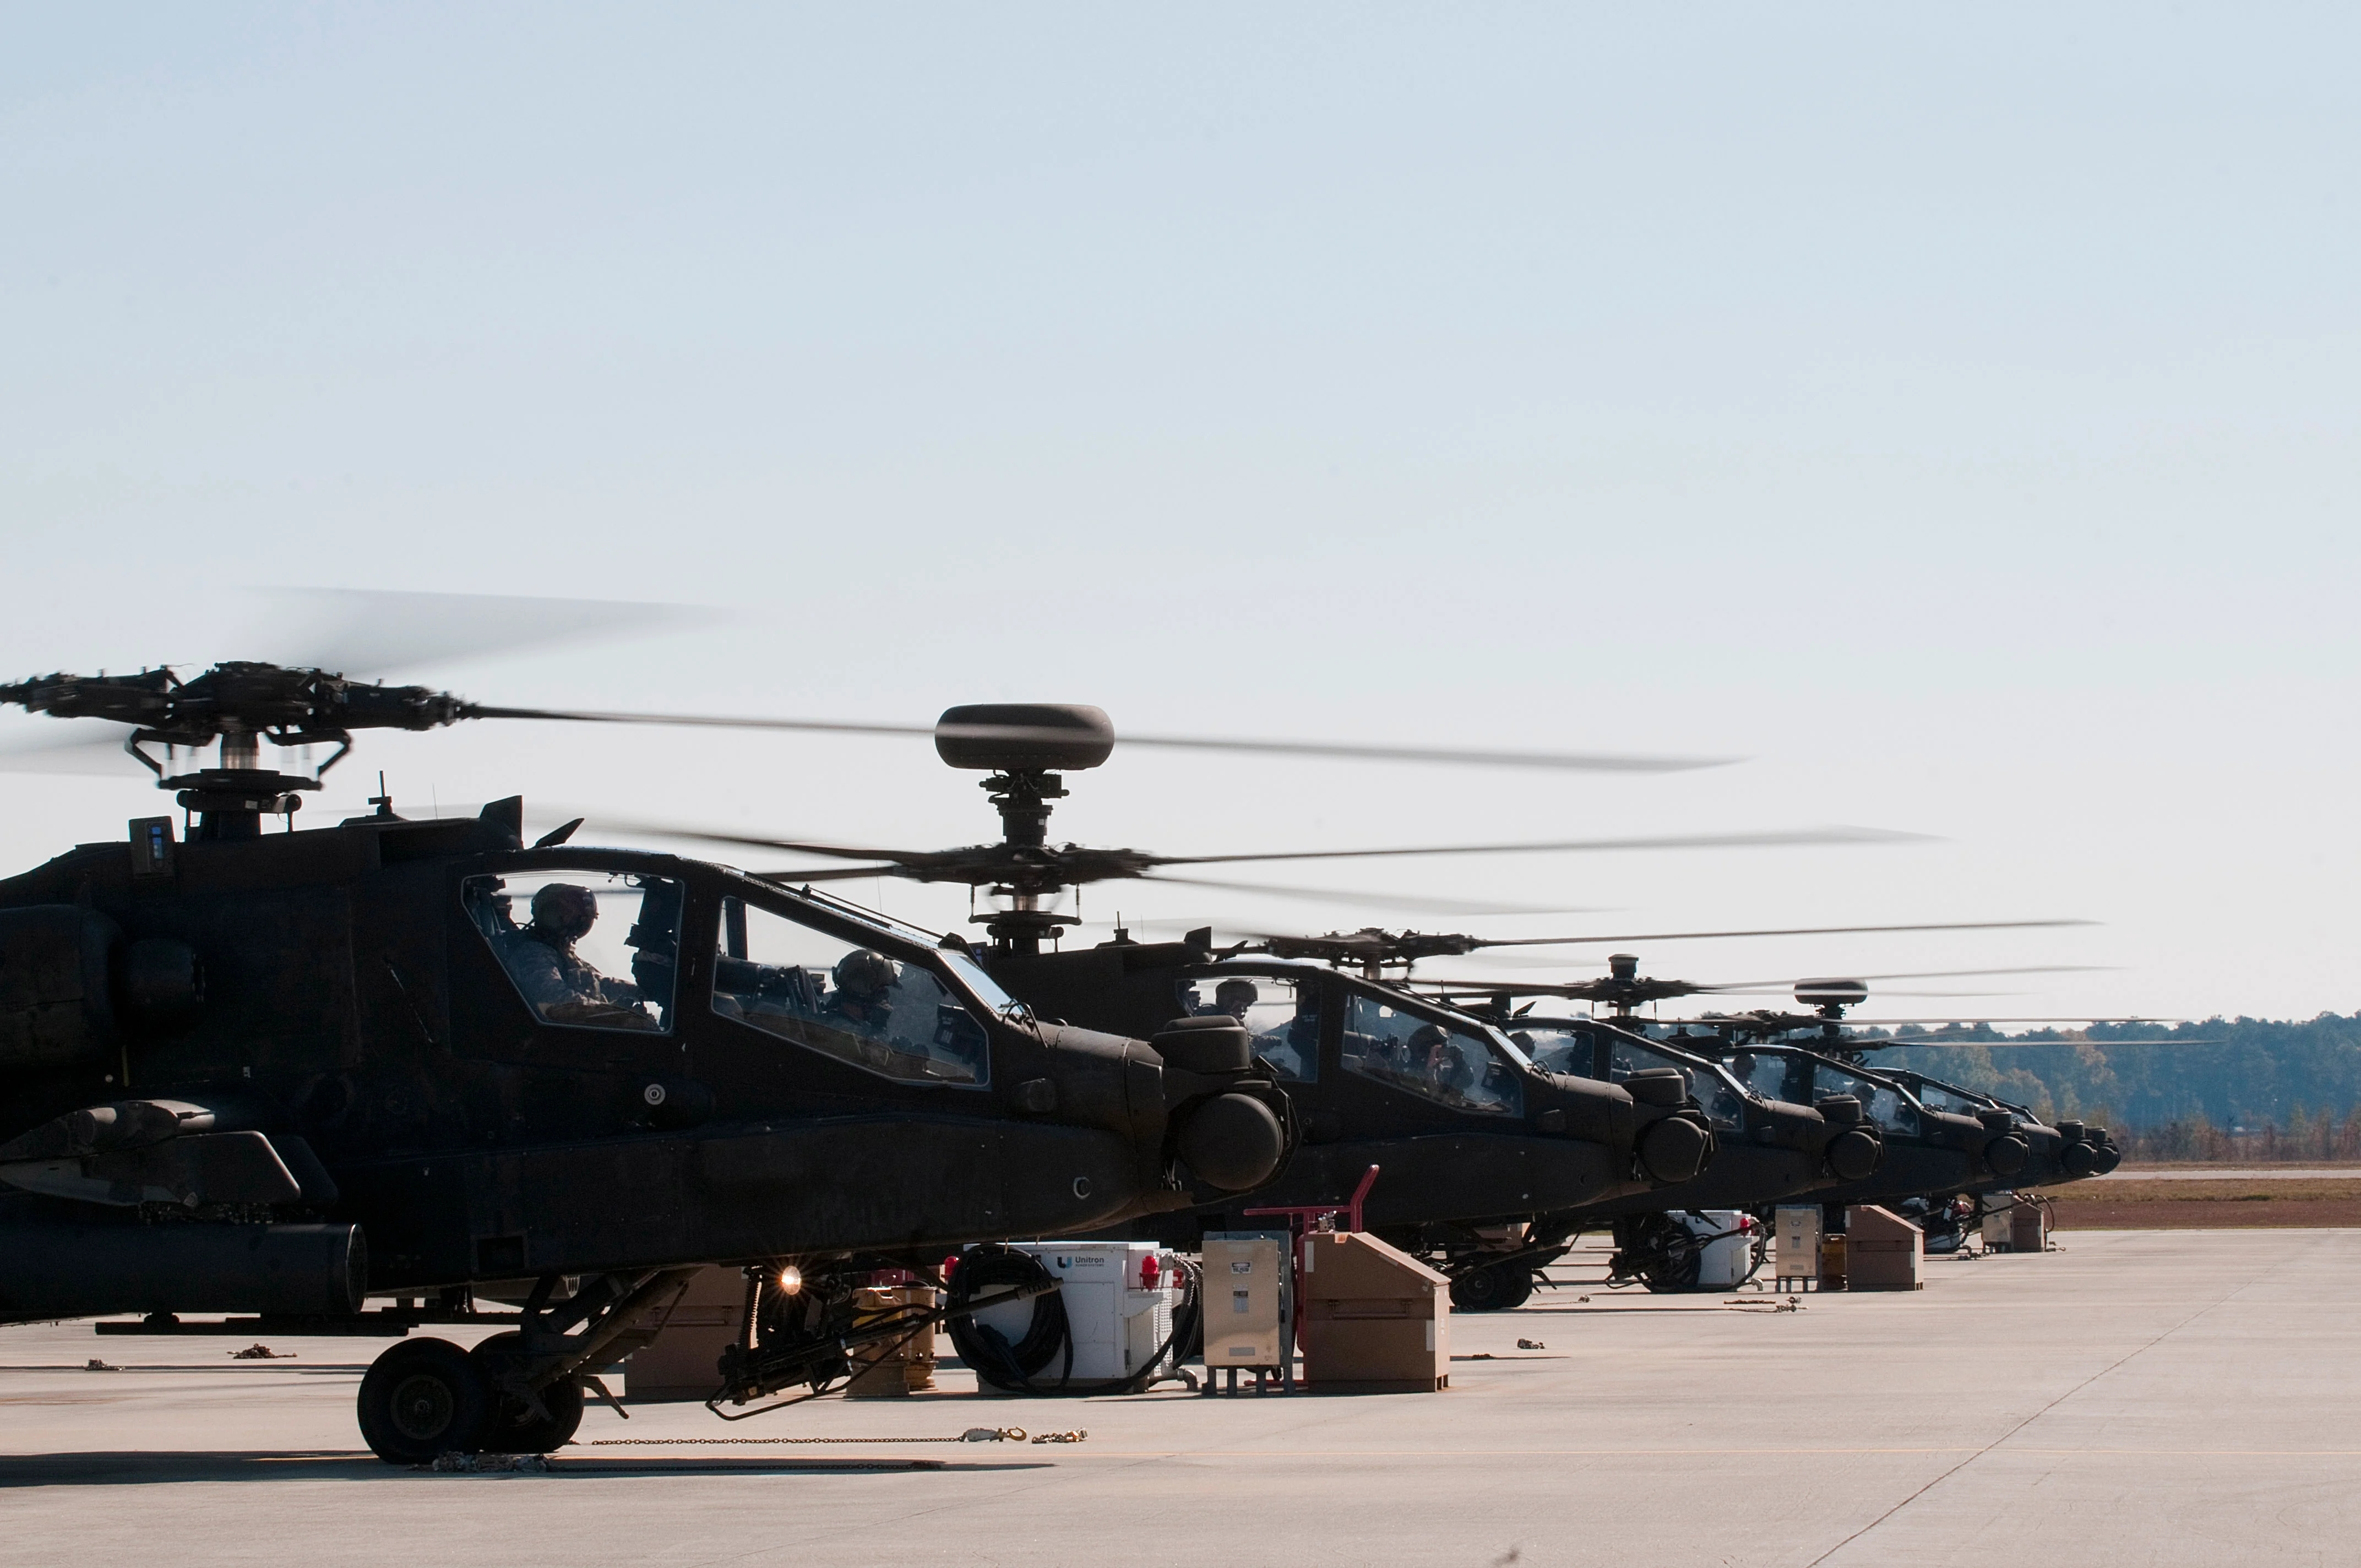 更高,更快,更远:阿帕奇武装直升机的未来